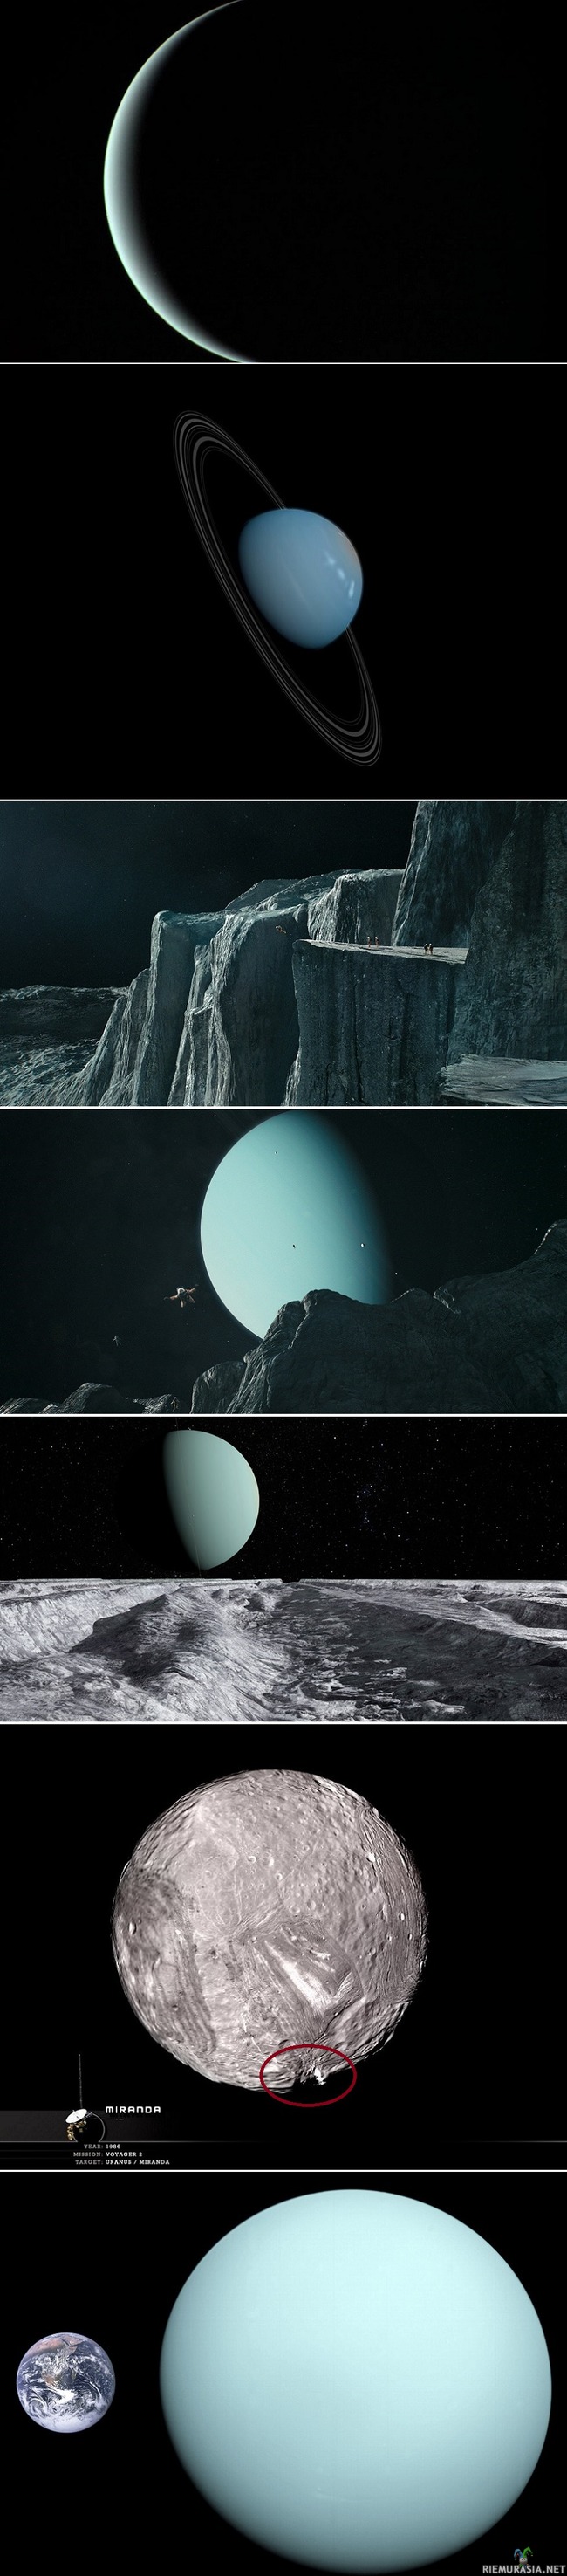 Tulevaisuuden kovin BASE-hyppypaikka - kuvat 1,2 ja viimeinen ovat Uranuksesta muut ovat Miranda-kuusta. 3 keskimmäistä ovat piirroskuvia. Uranuksella yksi vuosi kestää 84 vuotta. Kohteen etäisyys 3,2 miljardia km Maasta

Uranuksen kuulla Mirandalla, jonka halkaisija on vain noin 500km löytyy Aurinkokunnan korkein kallionkieleke. Tämä tarkoittaa sitä, että Missään muualla et voisi pudota pitempää matkaa Vuoren/kallion päältä kuin Mirandalla Aurinkokunnan alueella. Vapaapudotuksen pituus voi olla jopa 10km. Putoaminen pohjalle kestäisi noin 12 minuuttia heikosta painovoimasta johtuen. Tämä on tulevaisuuden kovin BASE-hyppypaikka.

Uraunusta pidettiin aluksi melko tylsänä planeettana, vaikka se olikin kaikkea muuta. Uranus on kaasujätti jolla ei ole kiinteää pintaa. Sillä on nestemmäinen jääsohjoinen ydin joka koostuu vedestä,metaanista, ammoniakista. Kaasukehässä on metaania ja heliumia. Tutkijat huomasivat vuonna 2004,31 erilaista rakennetta Uranuksen pinnalla. Ne ovat valtavia tuhansien kilometrien halkaisijaltaan olevia myrskyjä

Uranuksella on ainutlaatuinen asento. Uranus kiertää Aurinkoa kuin kyljellään oleva hyrrä ainoana planeettana, 84 vuden kierroksellaan sen navoille osuu eniten Auringonvaloa.




